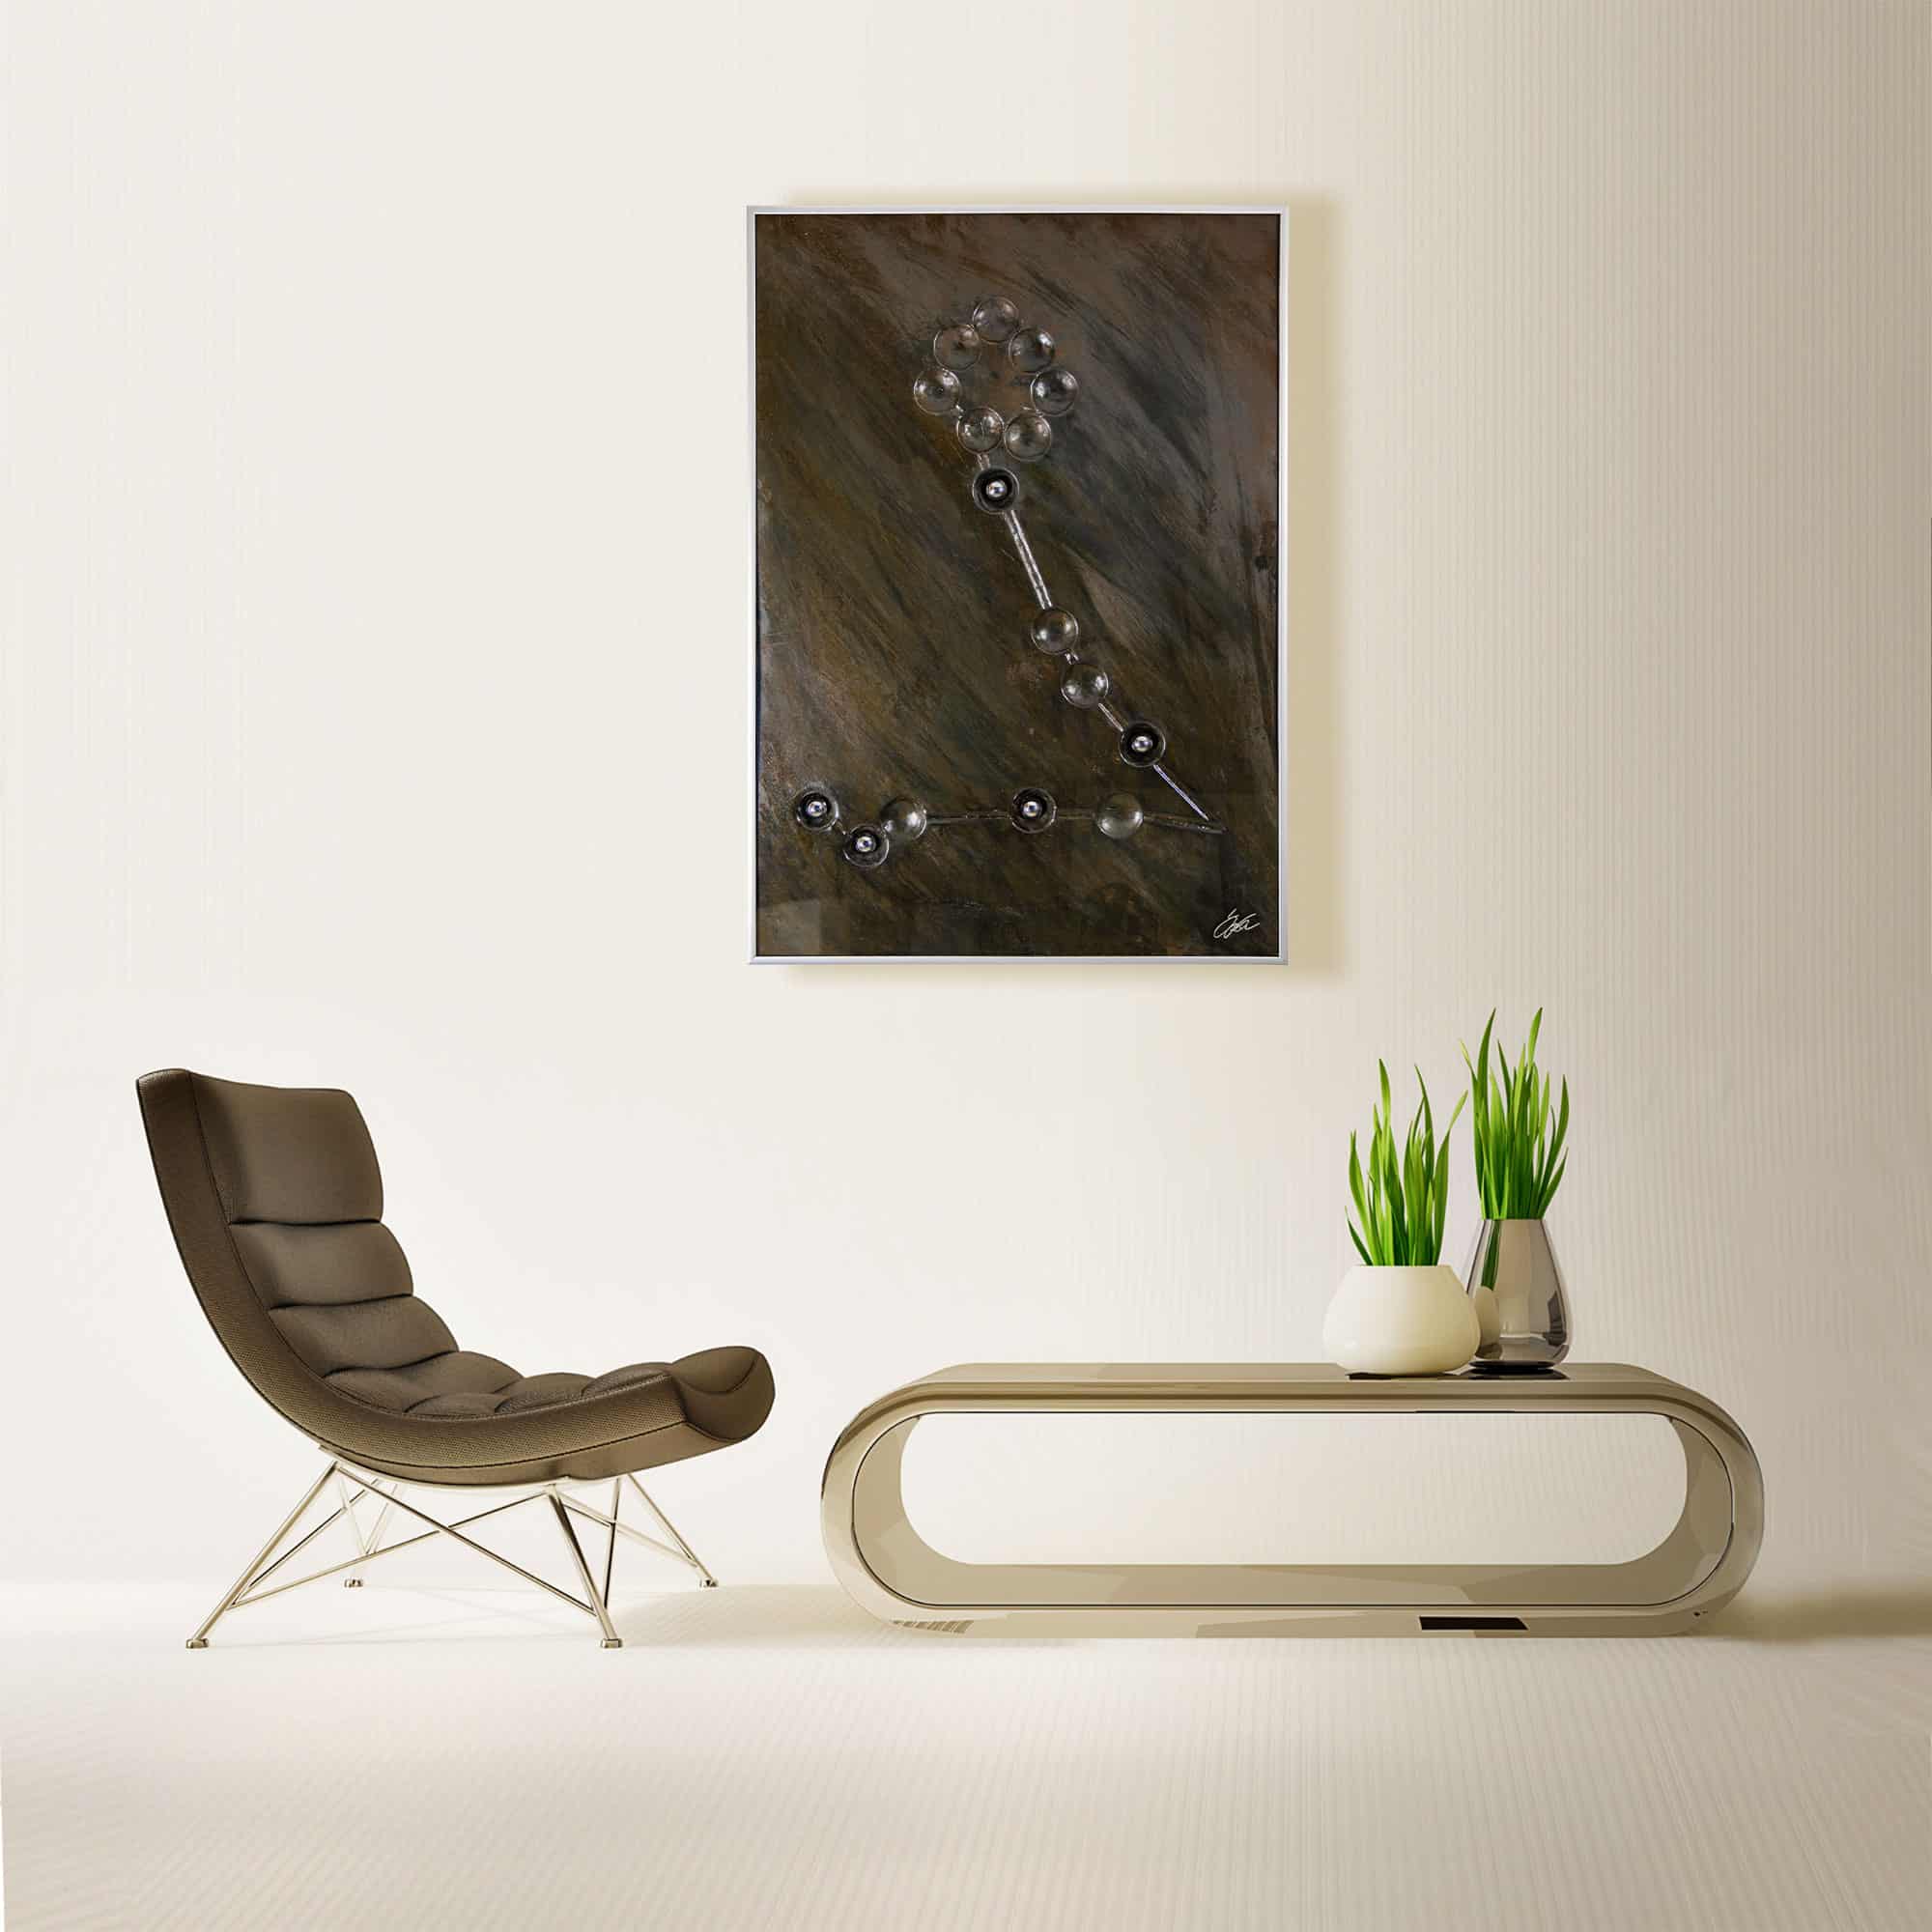 Wohnzimmer Deko Designer Tisch - Stahlbild bzw. Bild aus Metall mit dem Namen „Fische“ aus der Reihe Sternbilder von Daniel Springer. Das Metallbild zeigt das Sternzeichen der Fische.